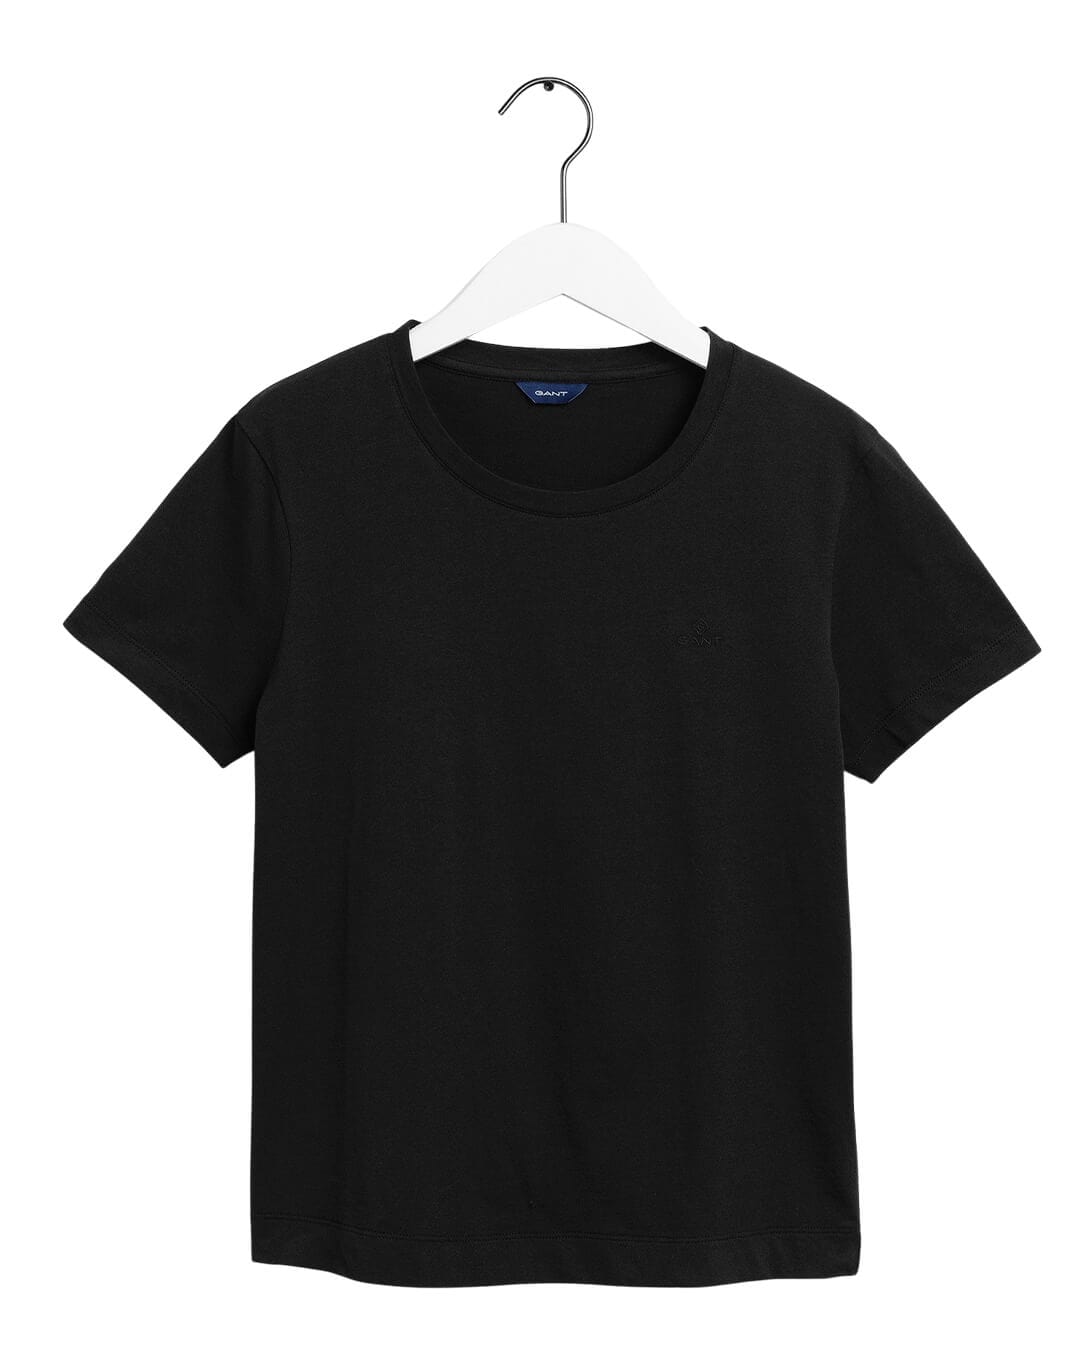 Gant T-Shirts Gant Original Black Basic T-Shirt